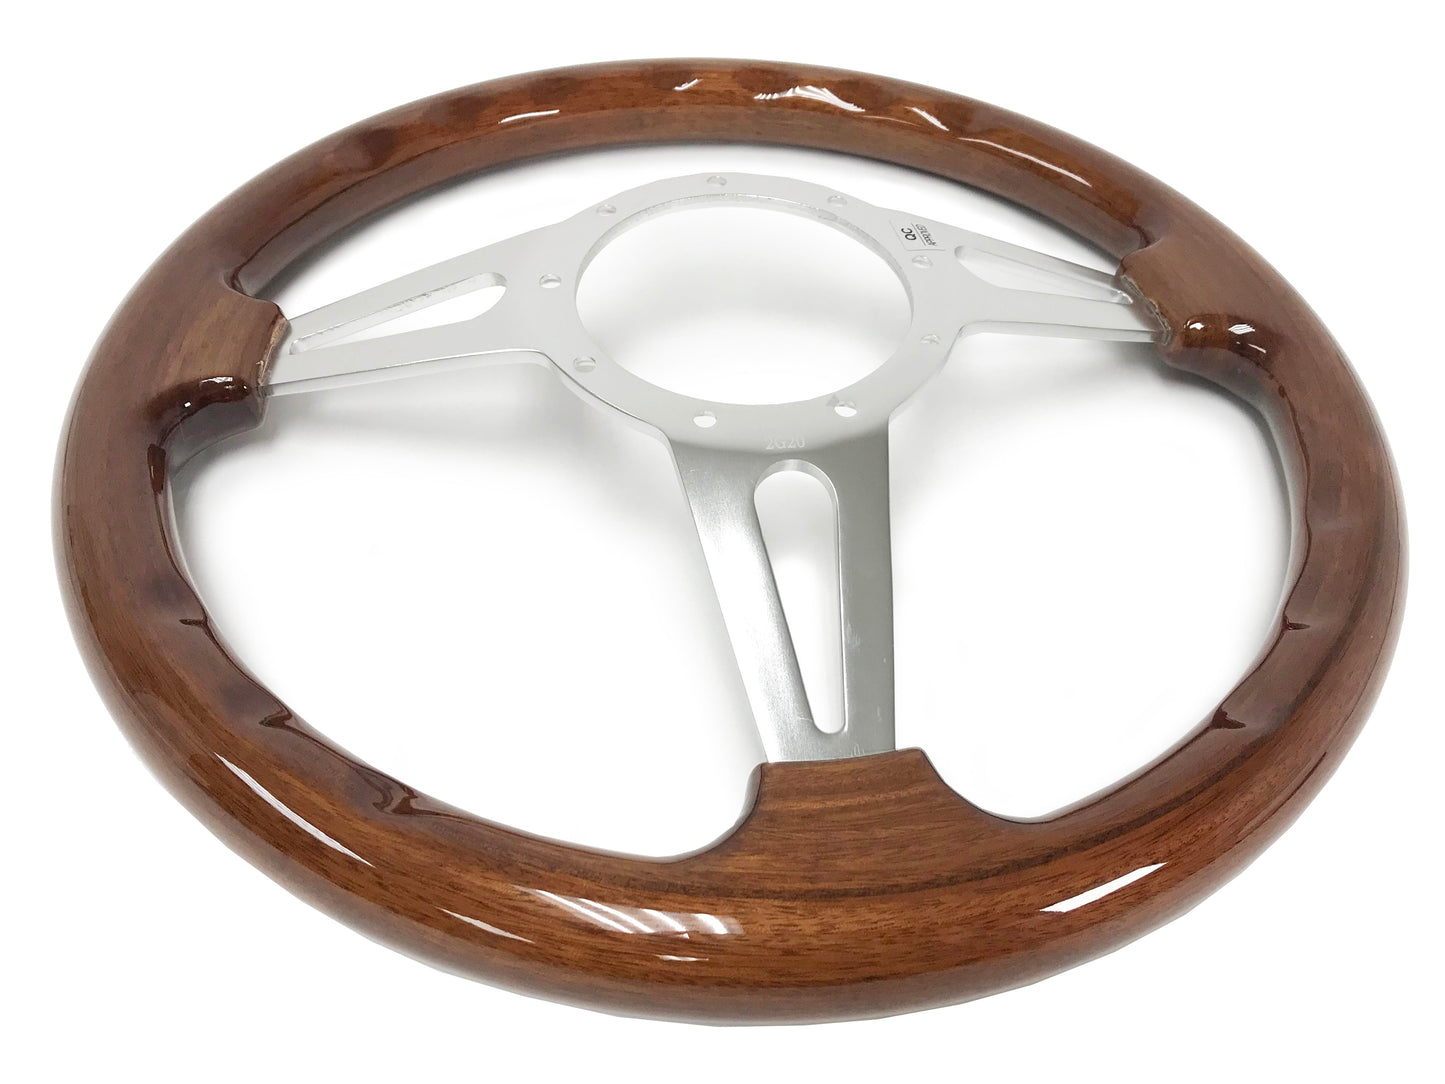 1963-64 Ford Falcon Steering Wheel Kit | Mahogany Wood | ST3078